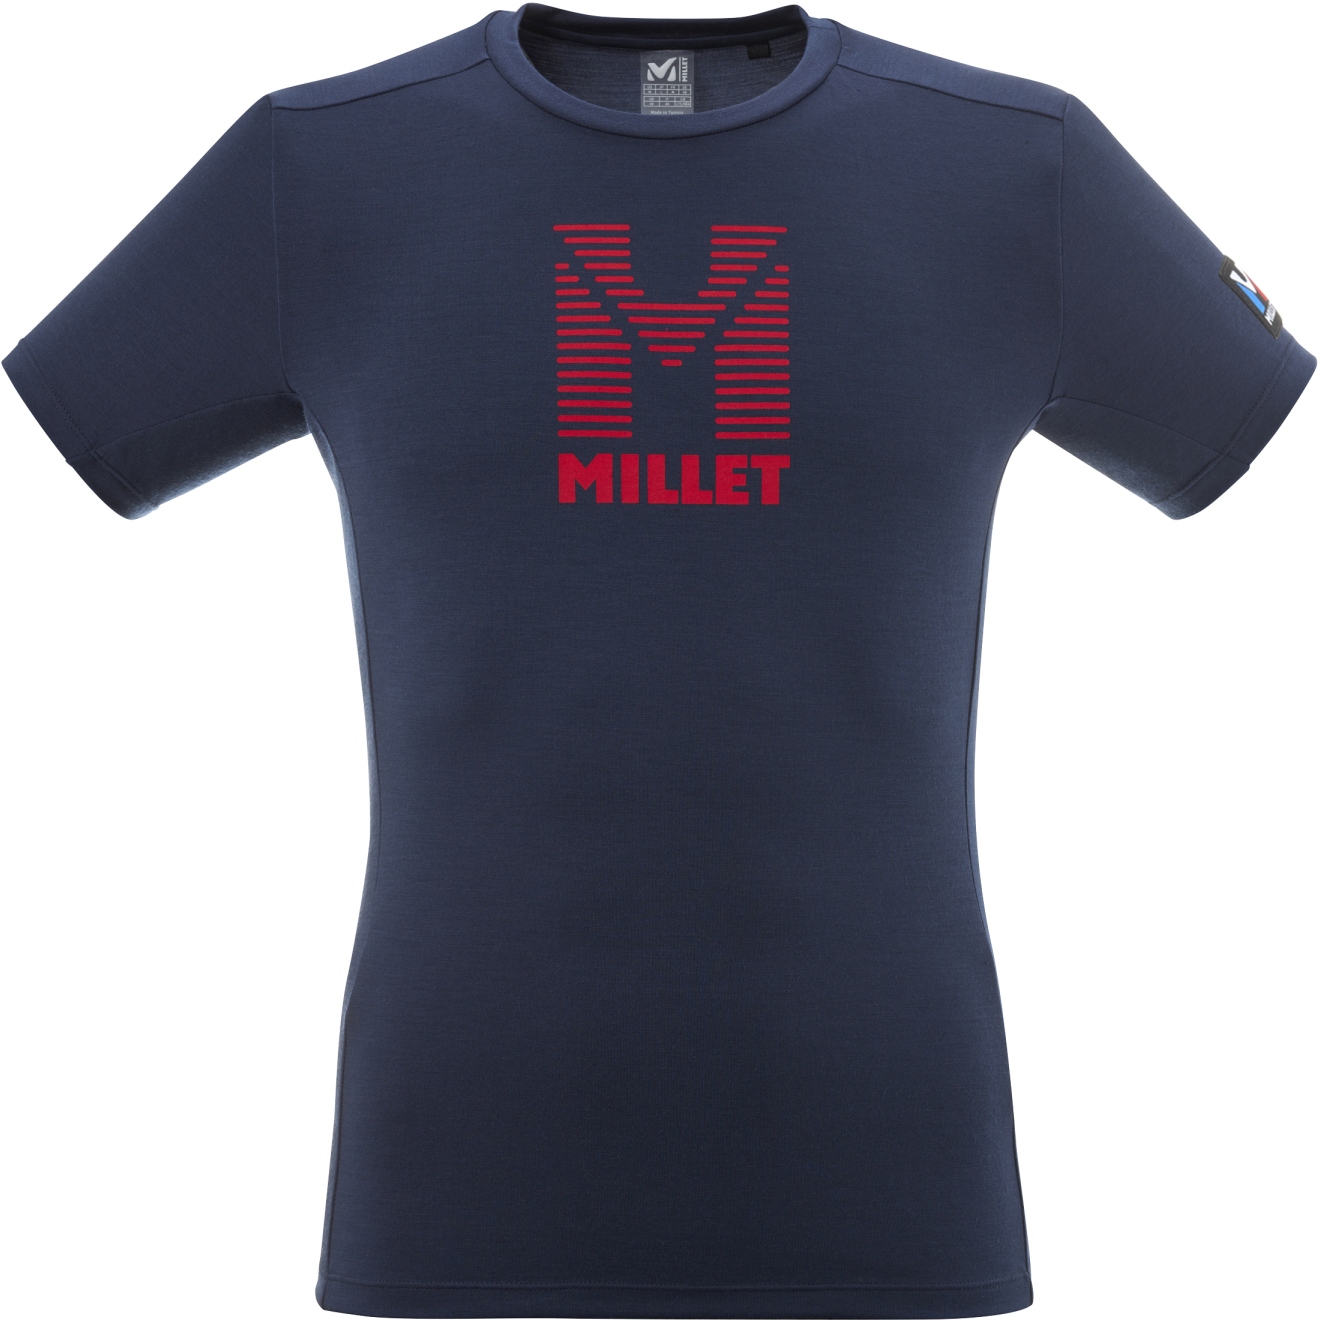 Produktbild von Millet Trilogy Wool Stripes T-Shirt Herren - Saphir